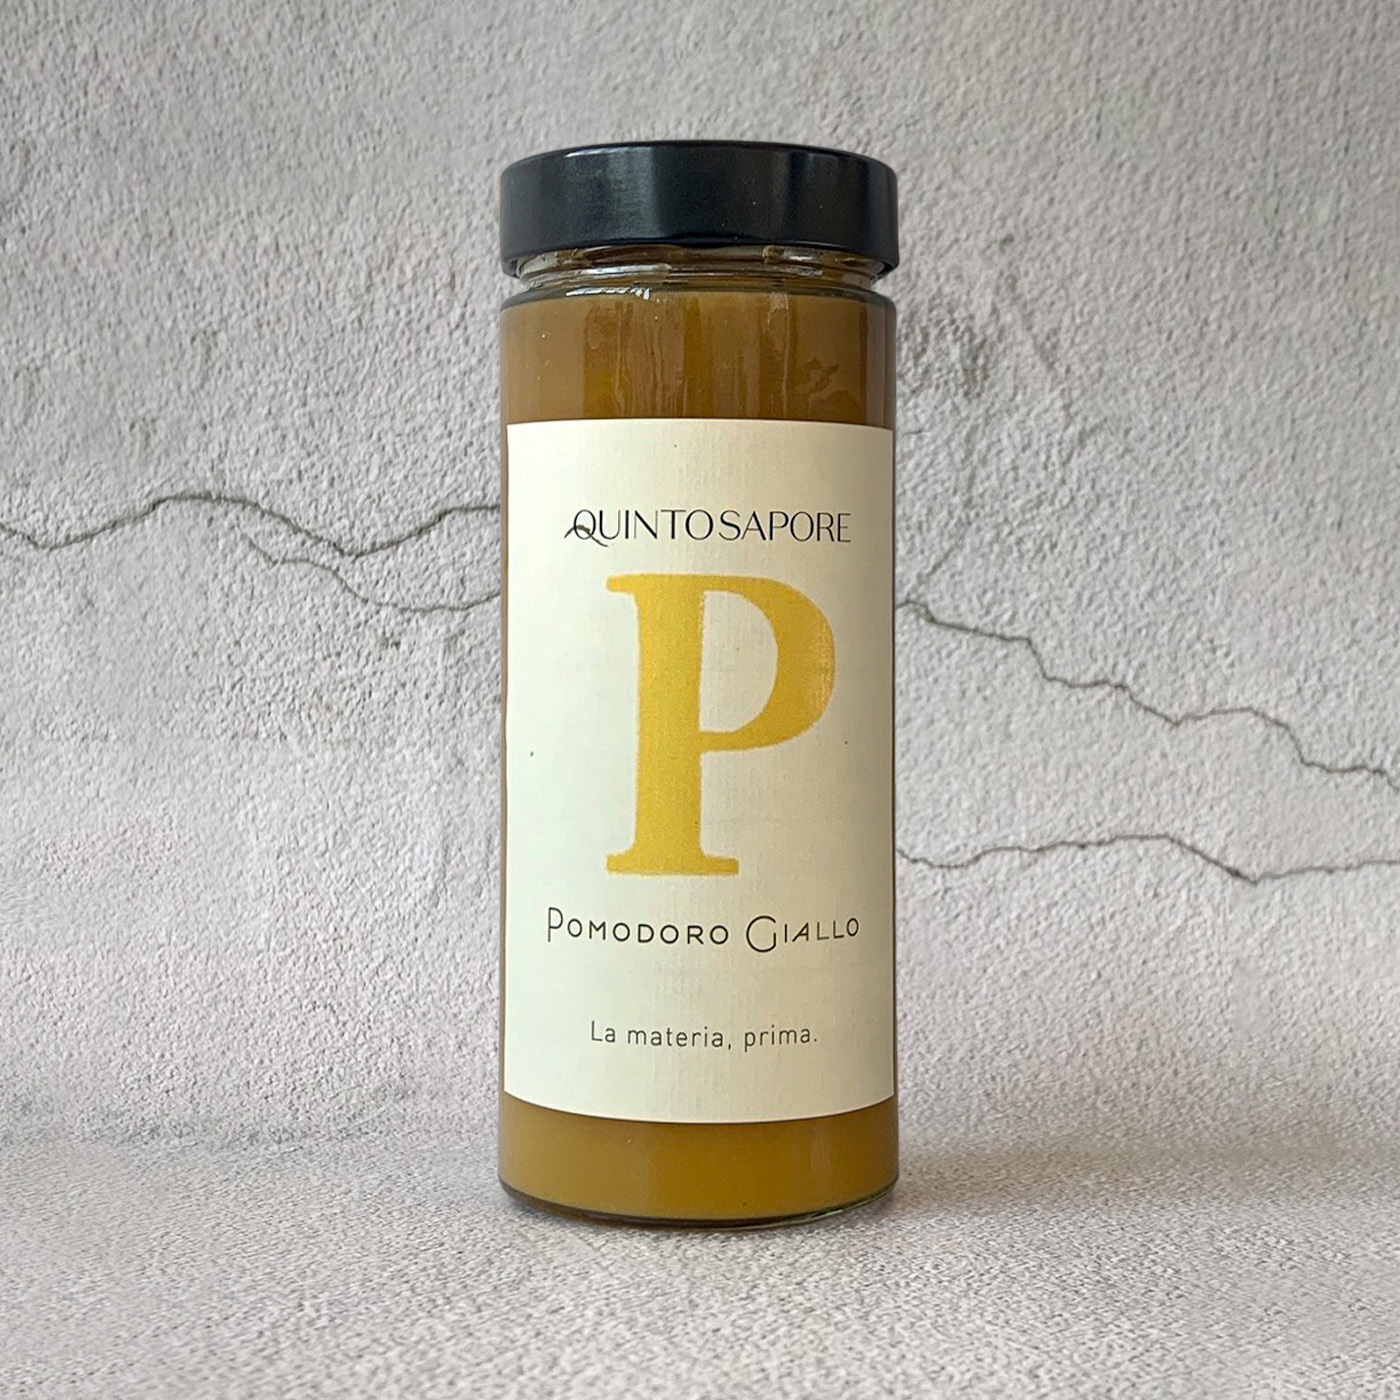 Santocielo - Product Carousel - Quintosapore_Passata pomodori gialli